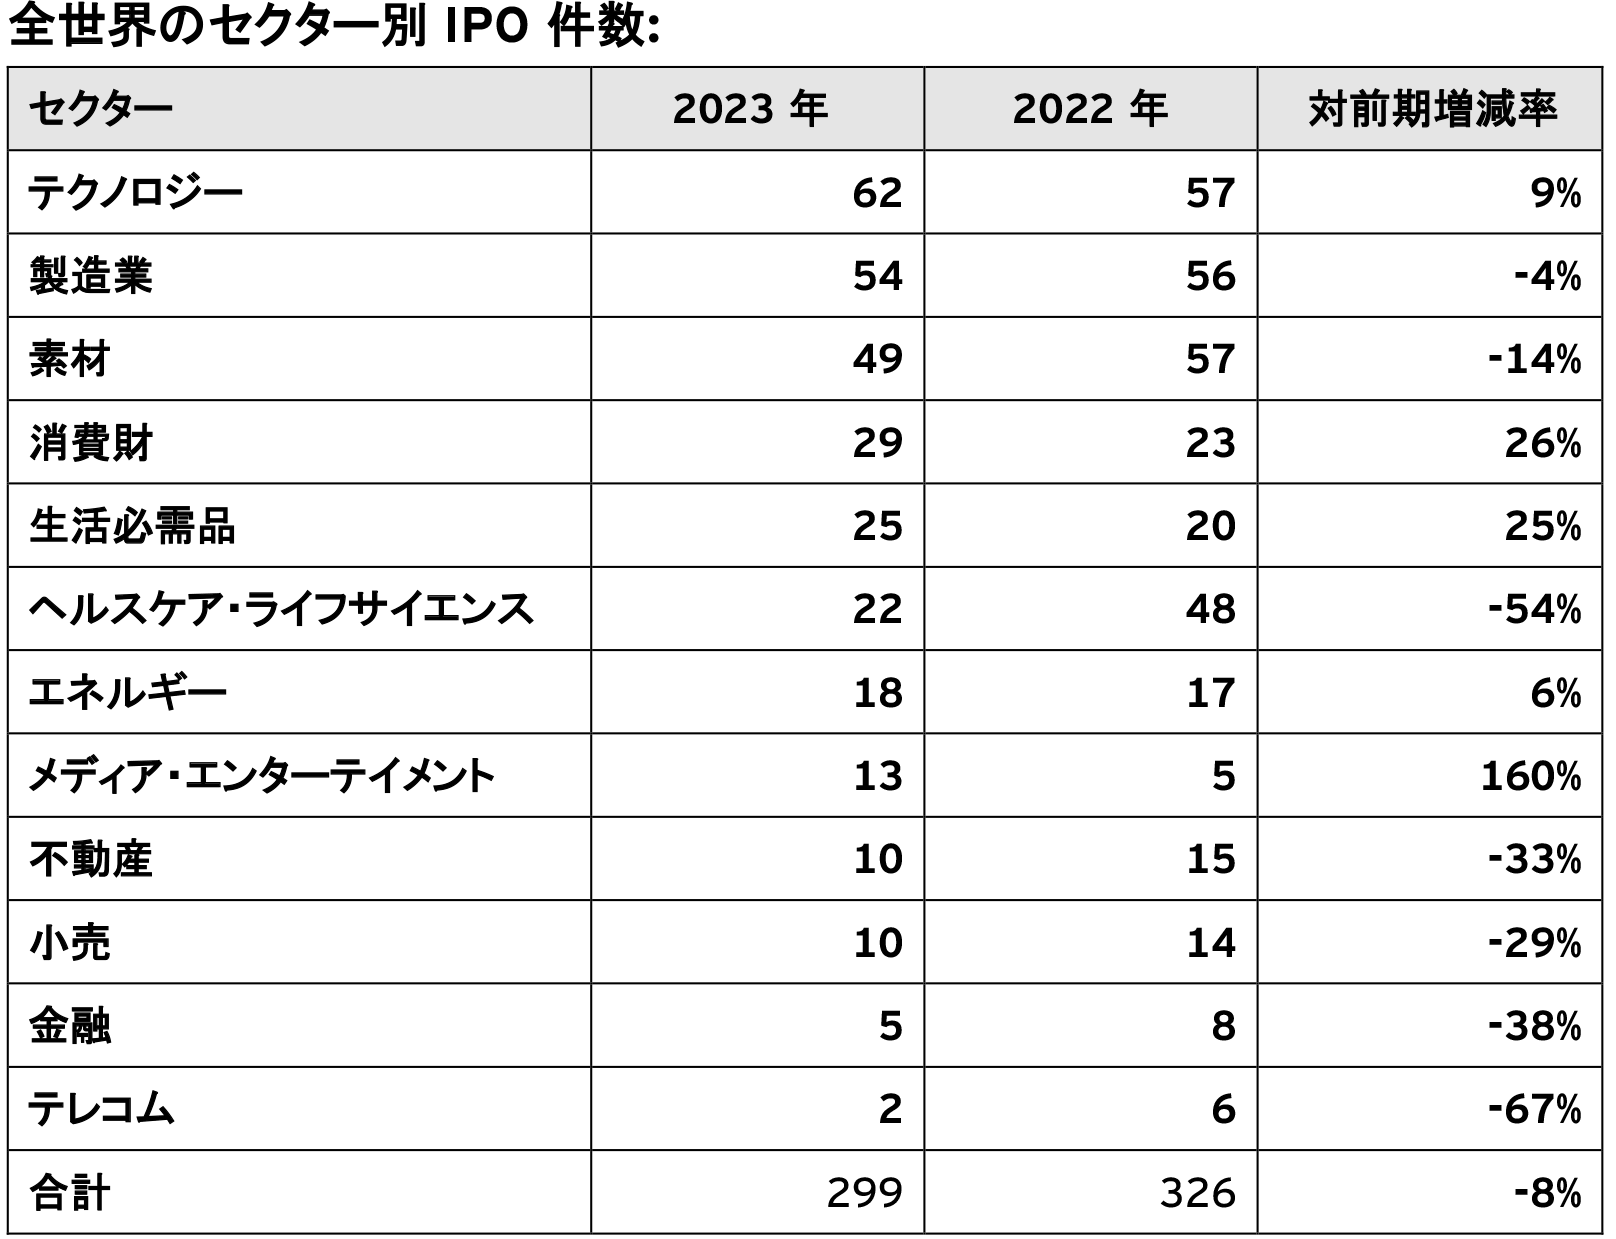 図2：全世界のセクター別IPO件数